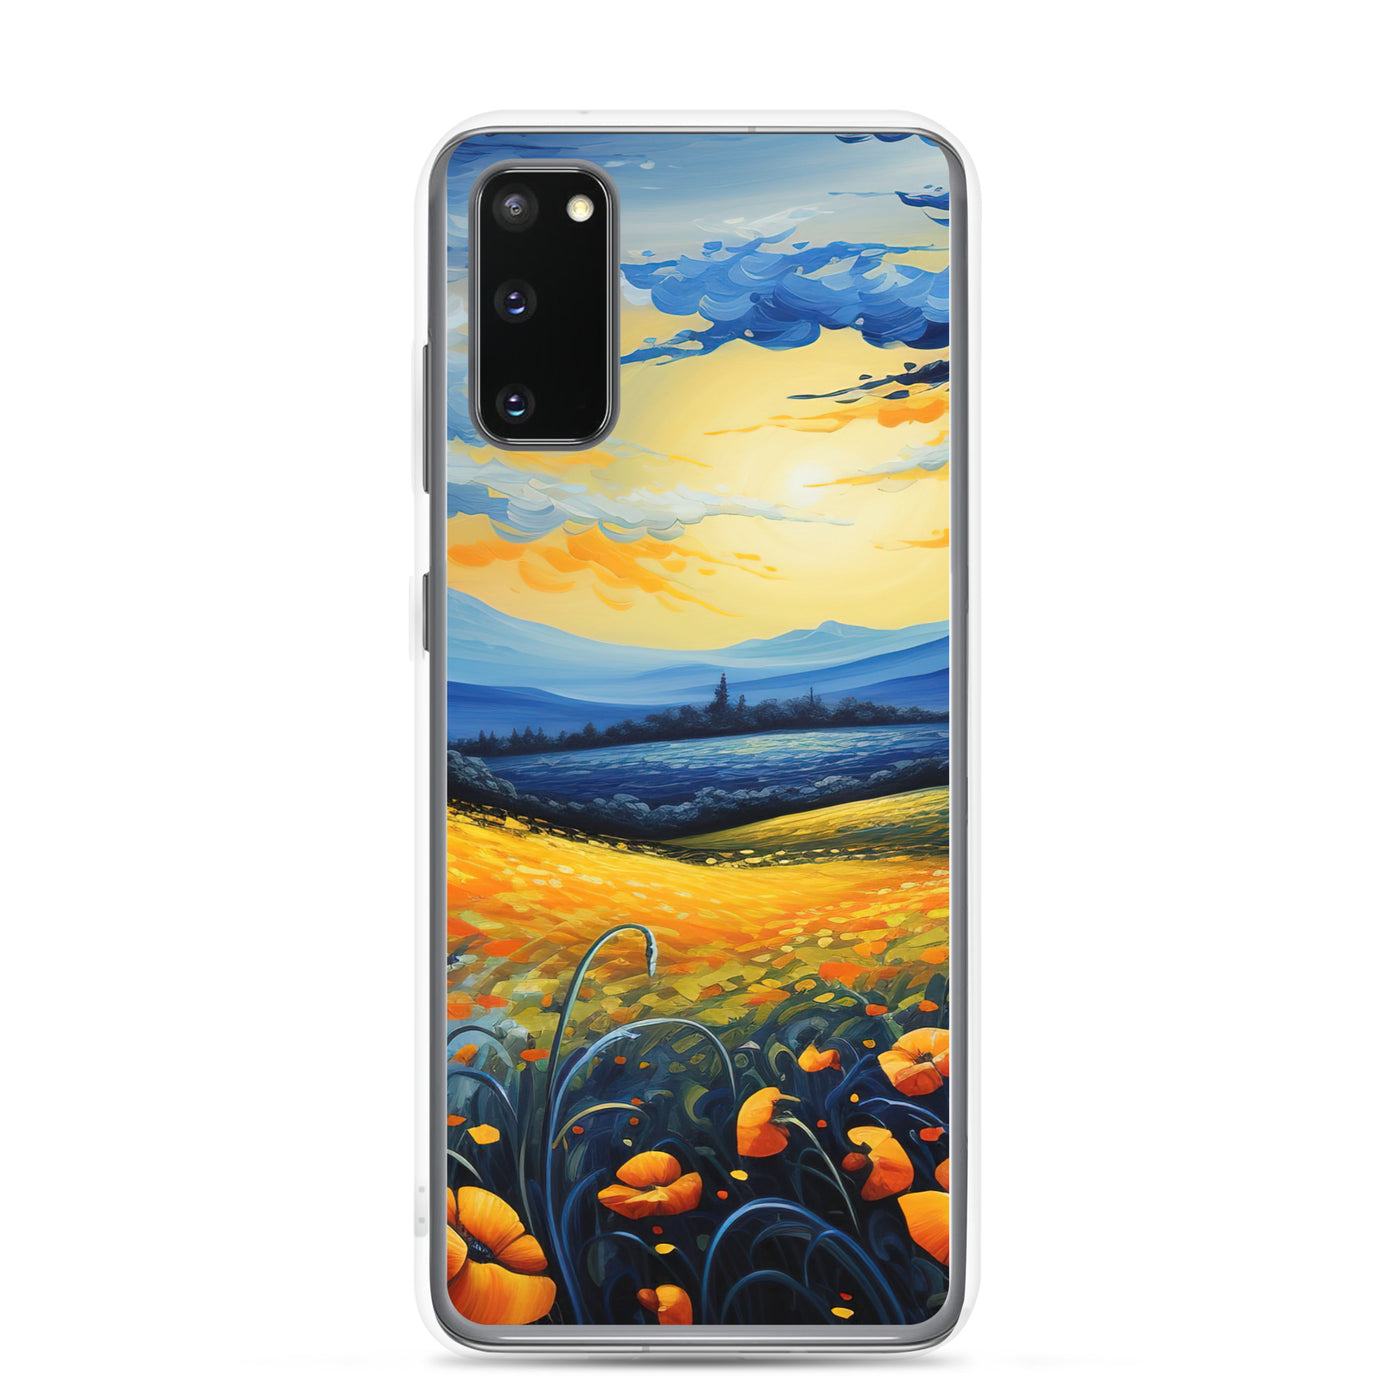 Berglandschaft mit schönen gelben Blumen - Landschaftsmalerei - Samsung Schutzhülle (durchsichtig) berge xxx Samsung Galaxy S20